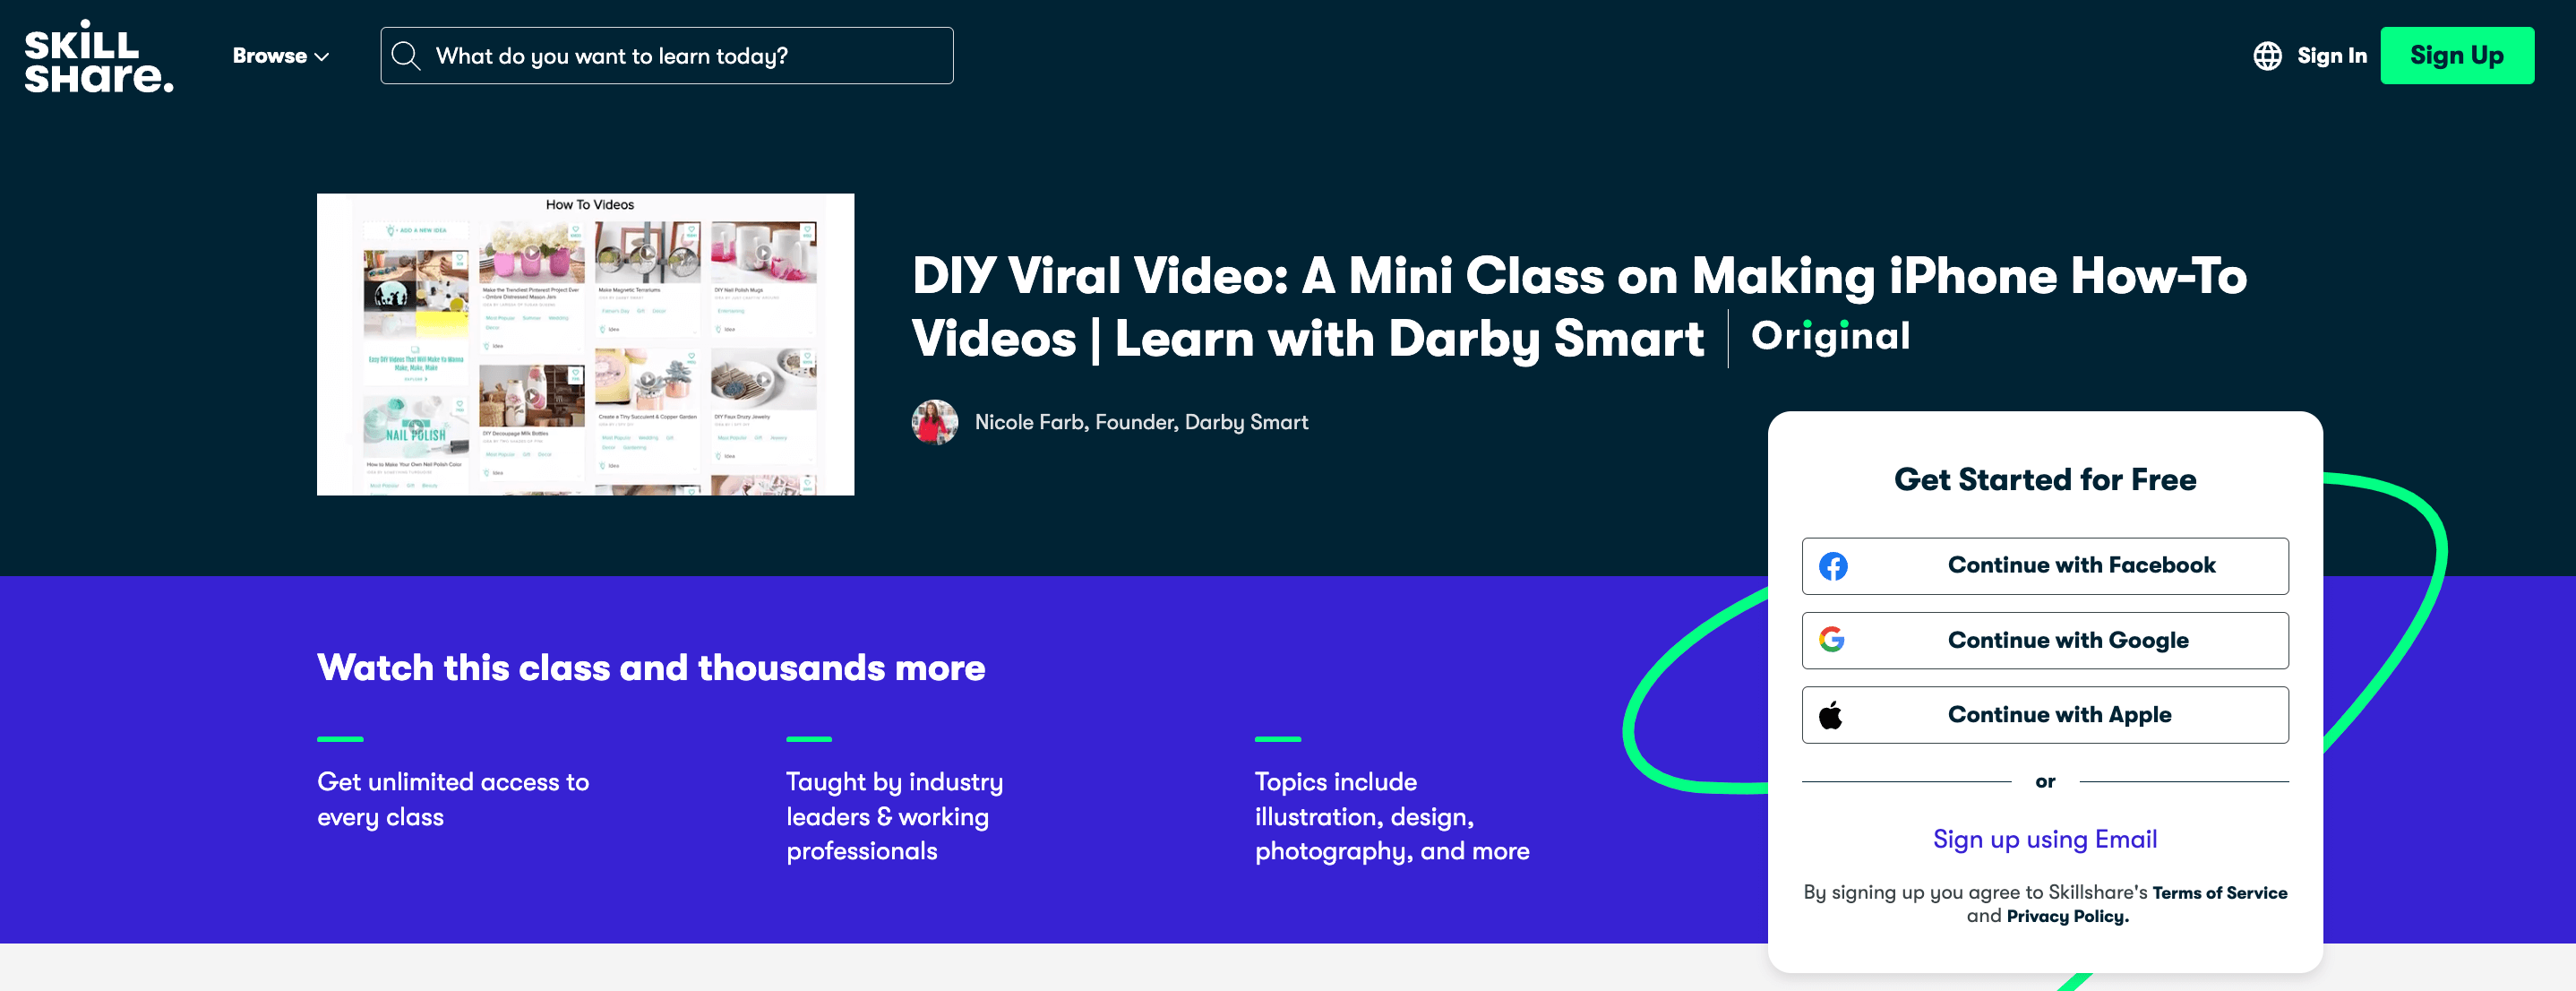 Homepage of Skillshare's Viral Video Class